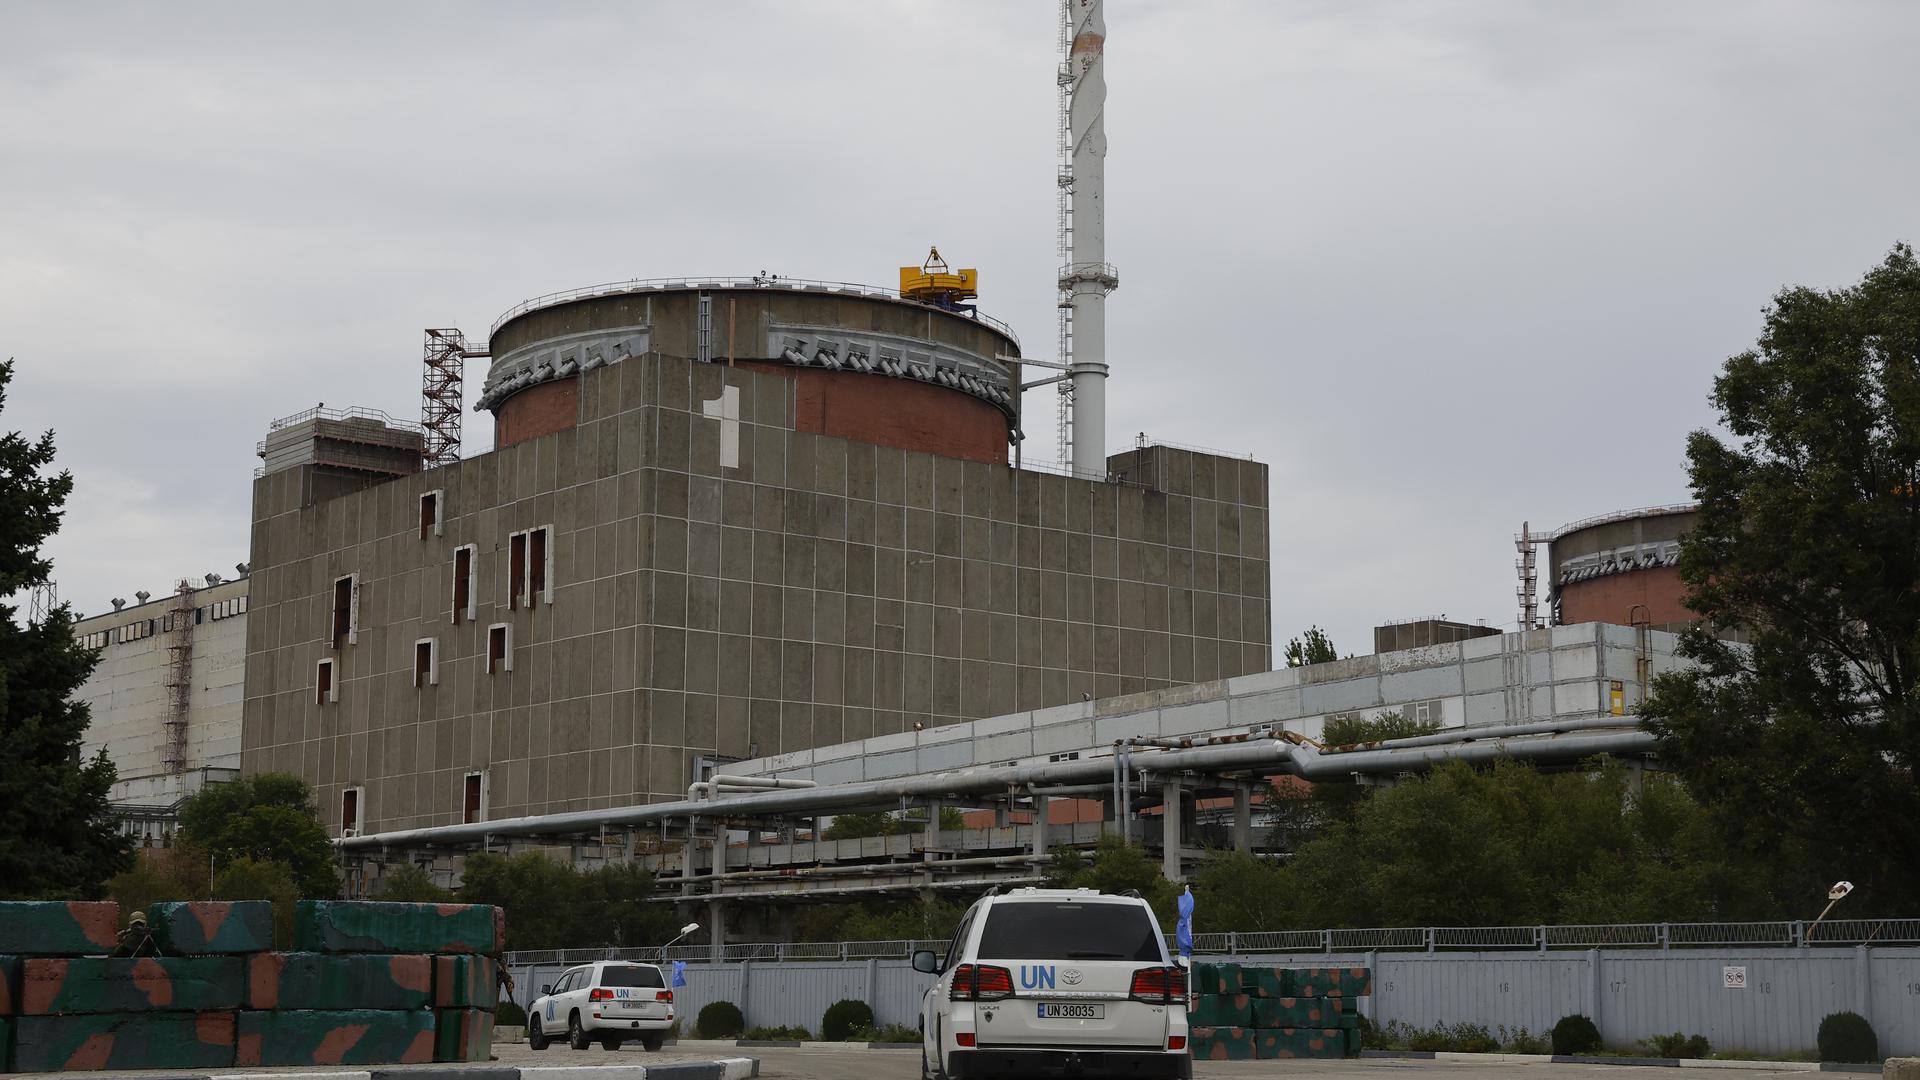 Ein unkalkulierbares Risiko: Knapp 2.000 Kilometer entfernt von Karlsruhe befindet sich ein großes Kernkraftwerk nahe der Frontlinie im Stellungskrieg zwischen Russland und der Ukraine. In den vergangenen Monaten haben Inspektoren der IAEA die Anlage in Saporischja mehrfach besucht, mit ihren Warnungen haben sie bislang wenig erreicht.